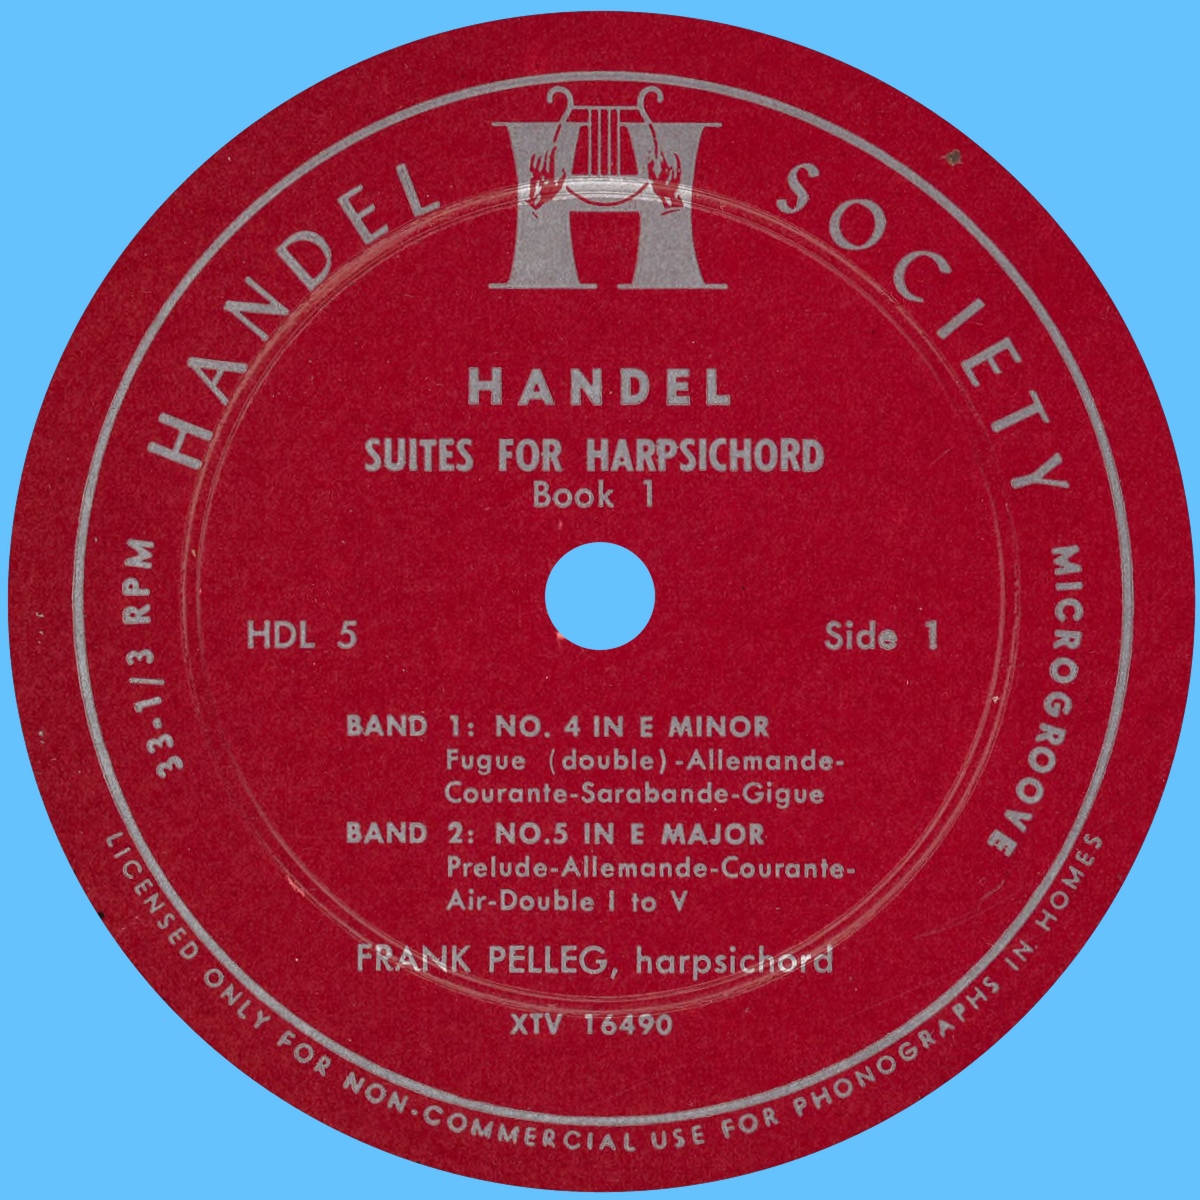 Étiquette recto du disque Handel Society HDL 5